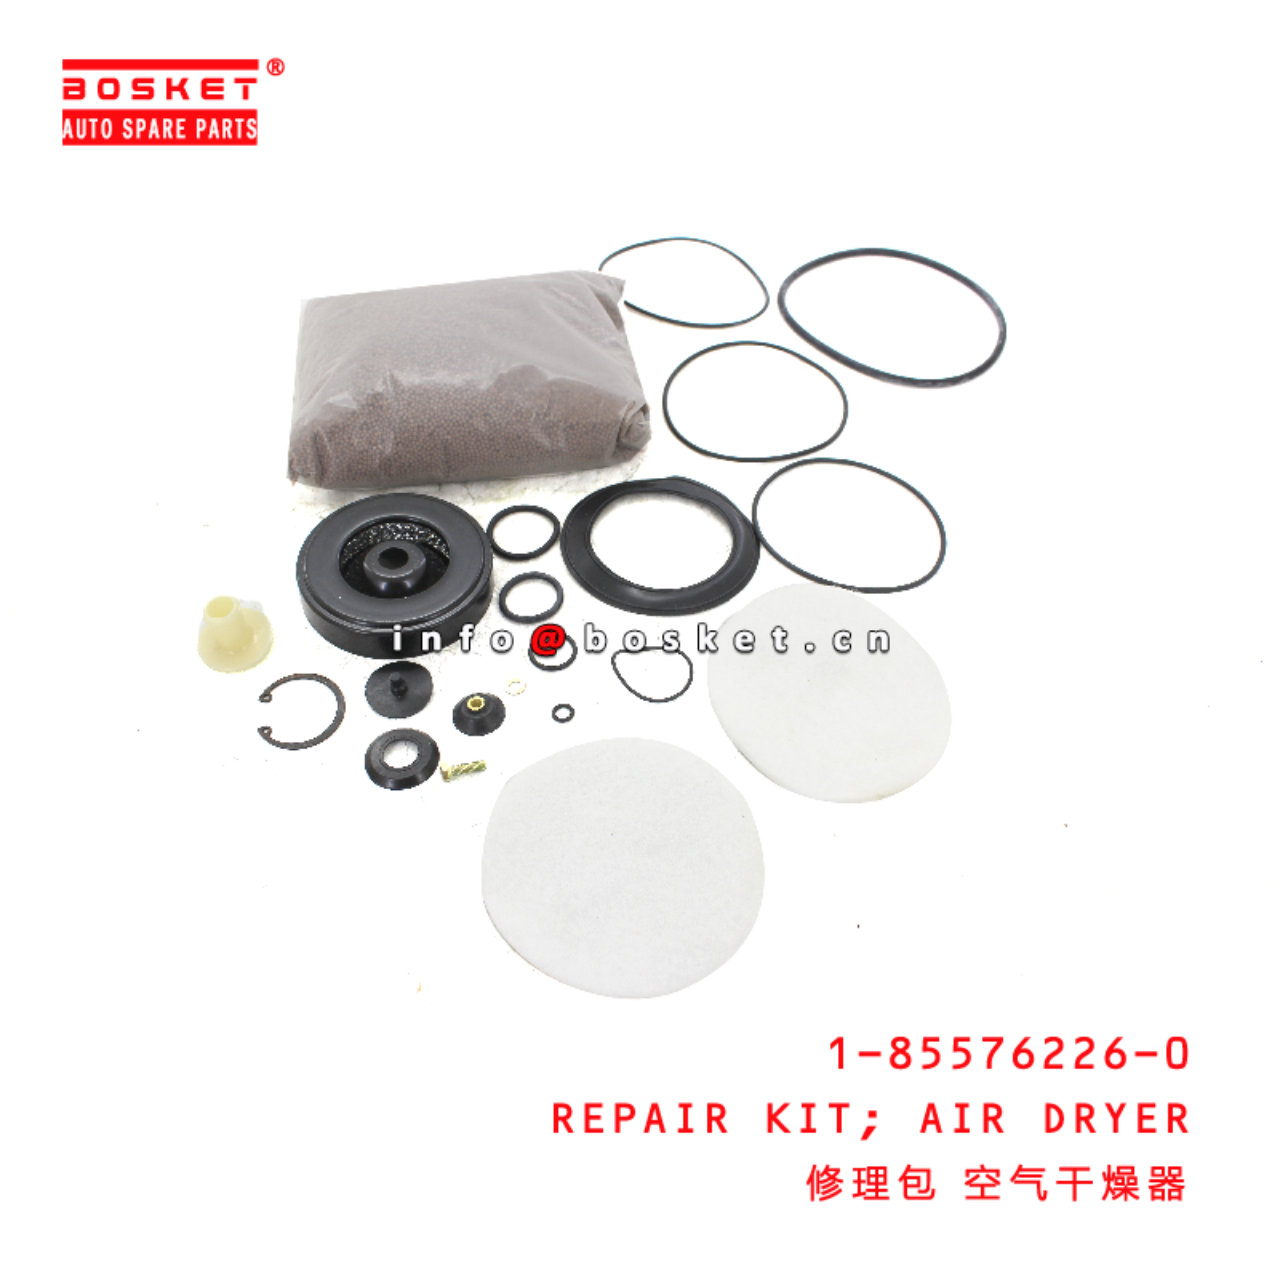 1-85576226-0 Air Dryer Repair Kit suitable for ISU...